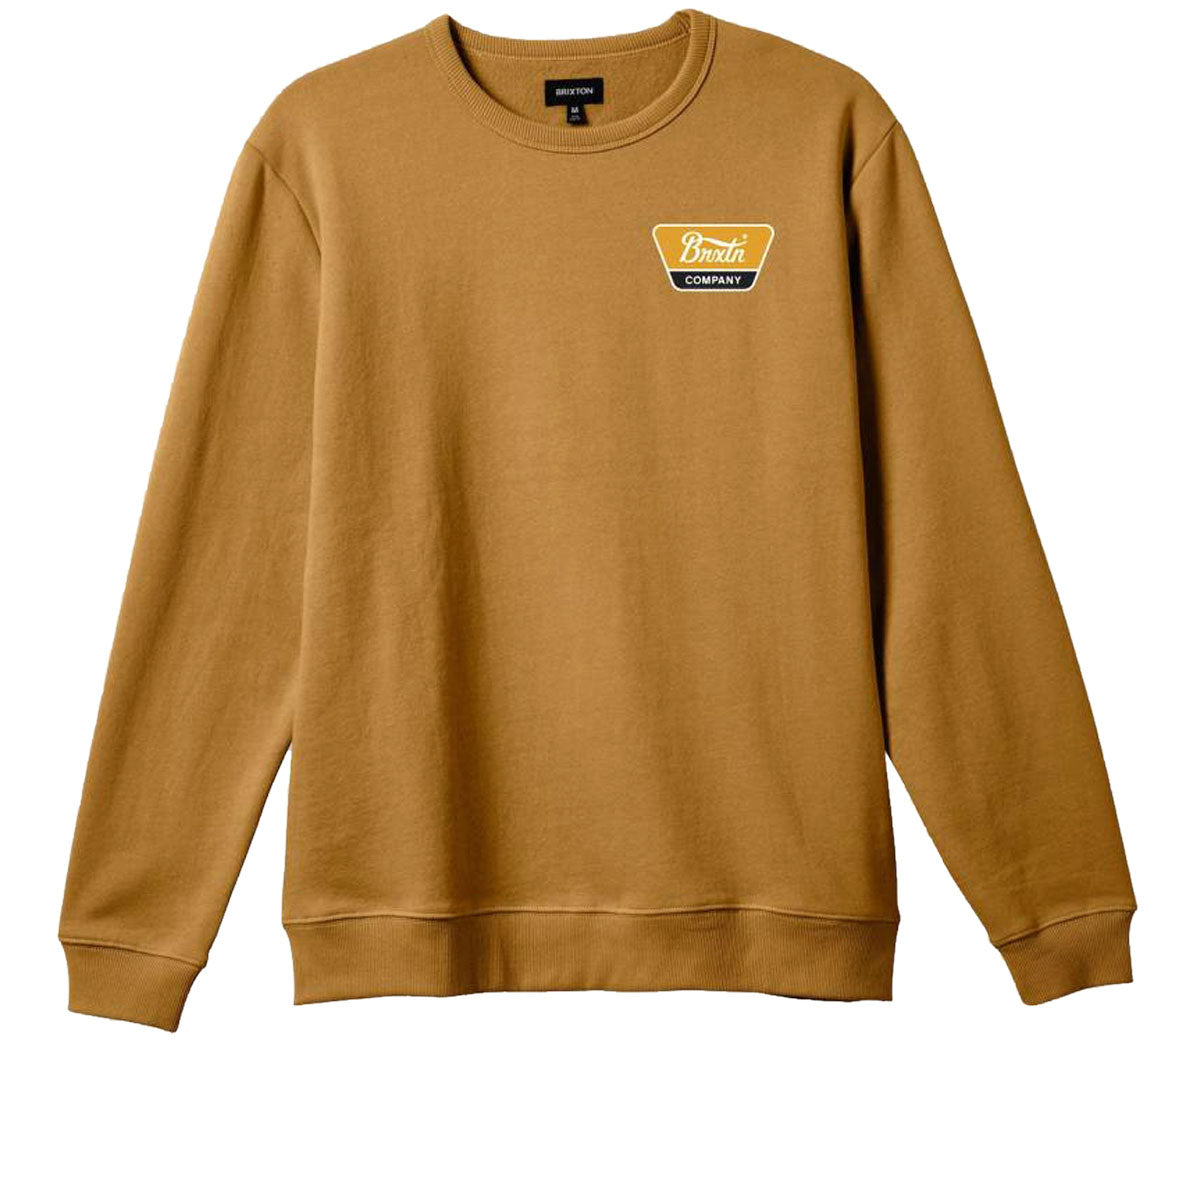 Brixton Linwood Crew Sweatshirt - Golden Brown image 1